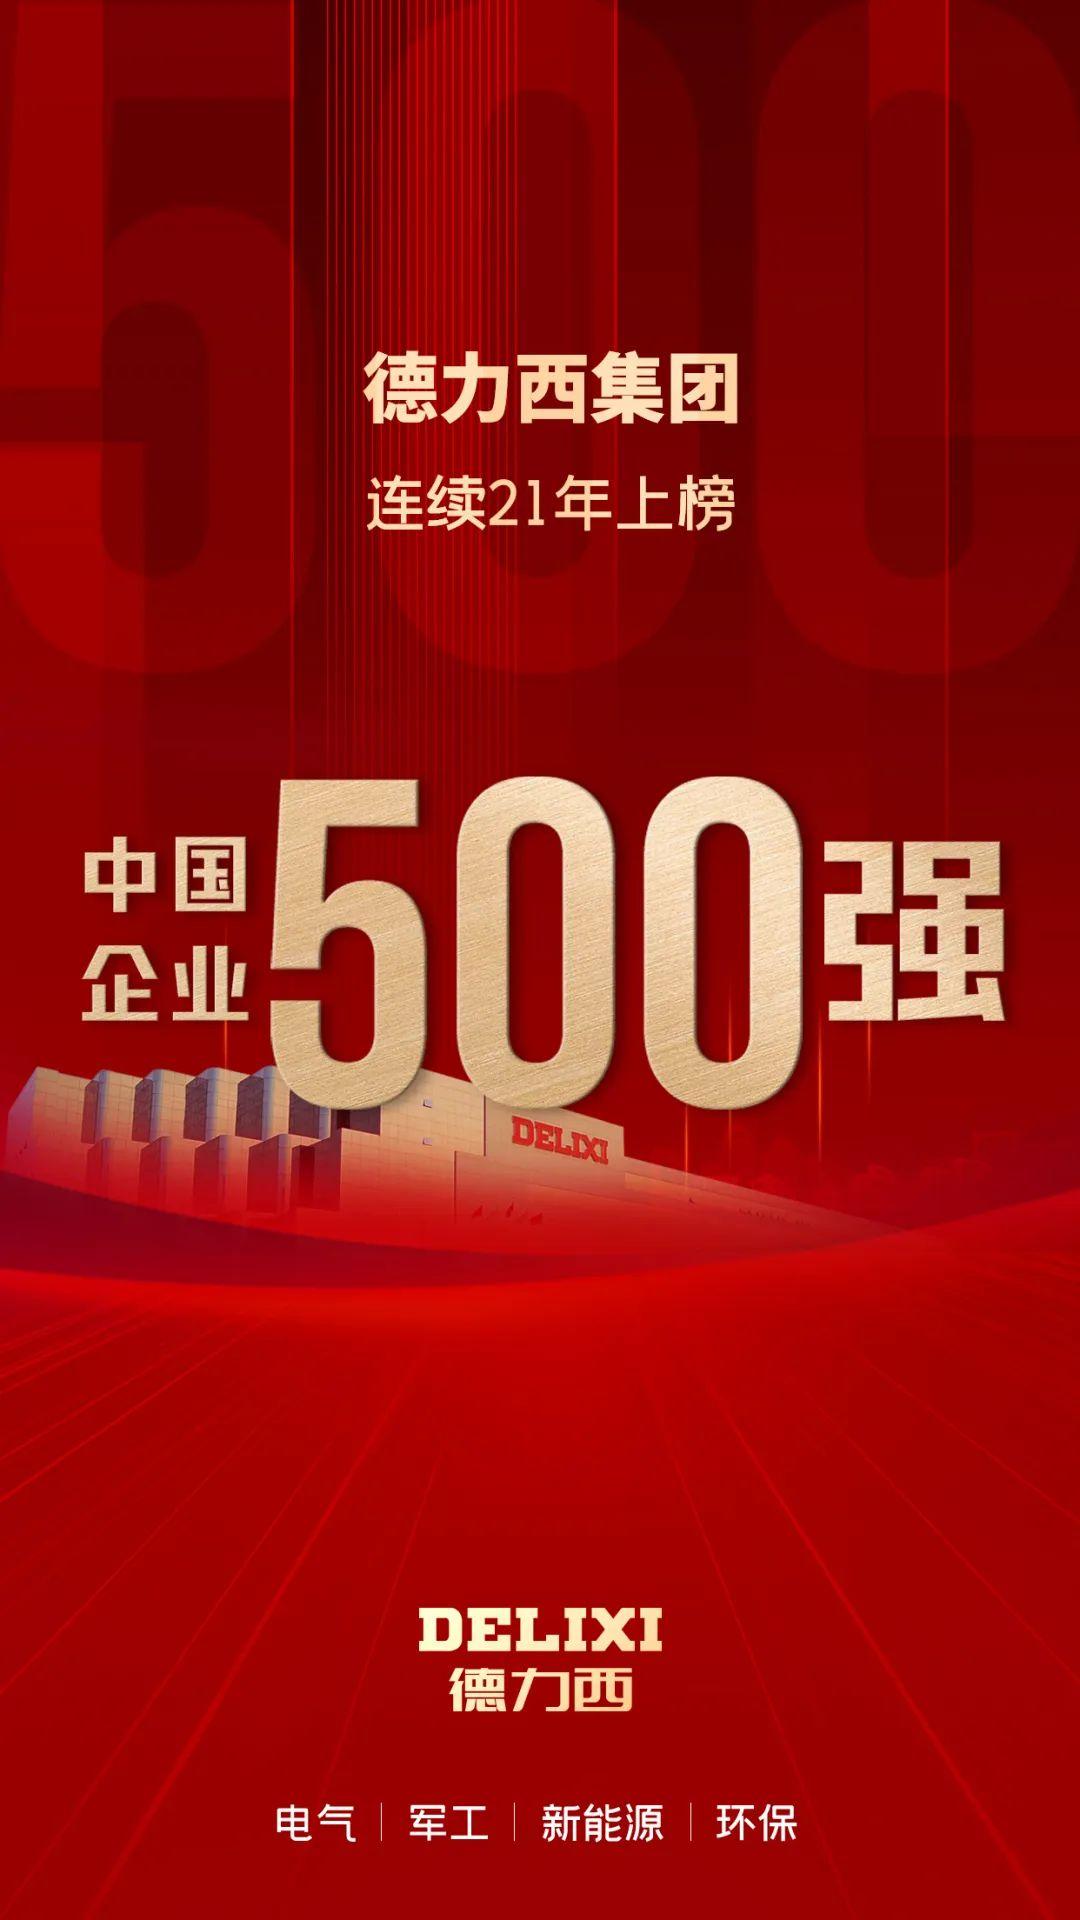 连续21年 德力西集团蝉联中国企业500强 